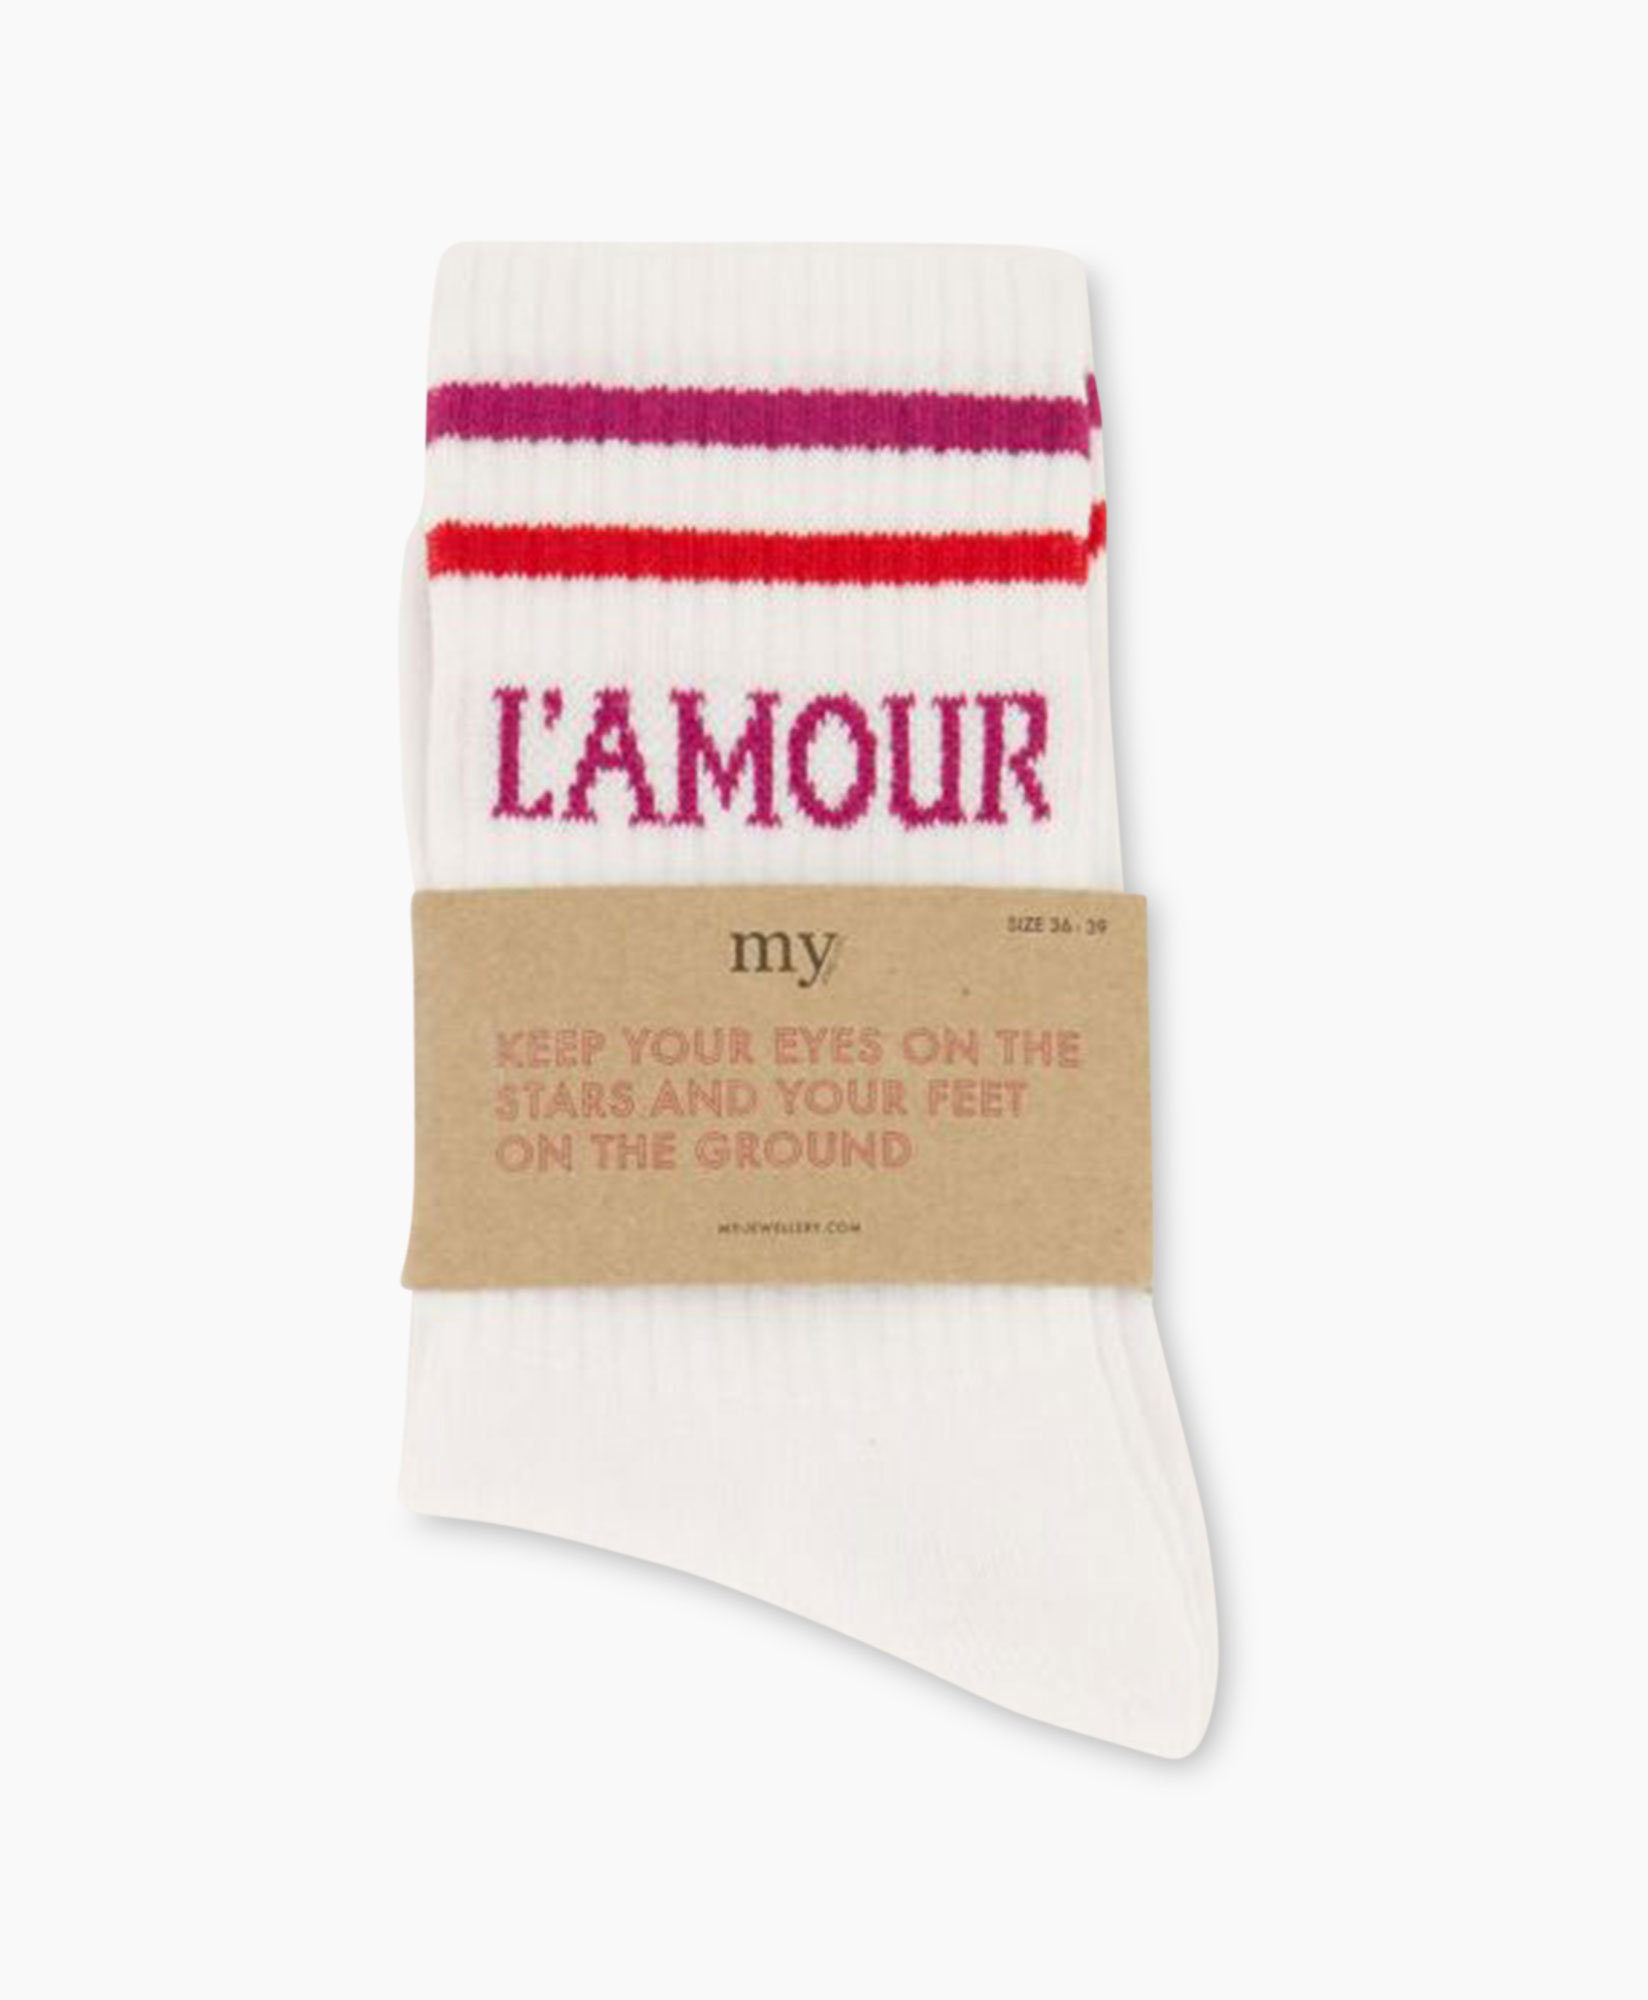 Kousen Socks Sporty L'amour Rose